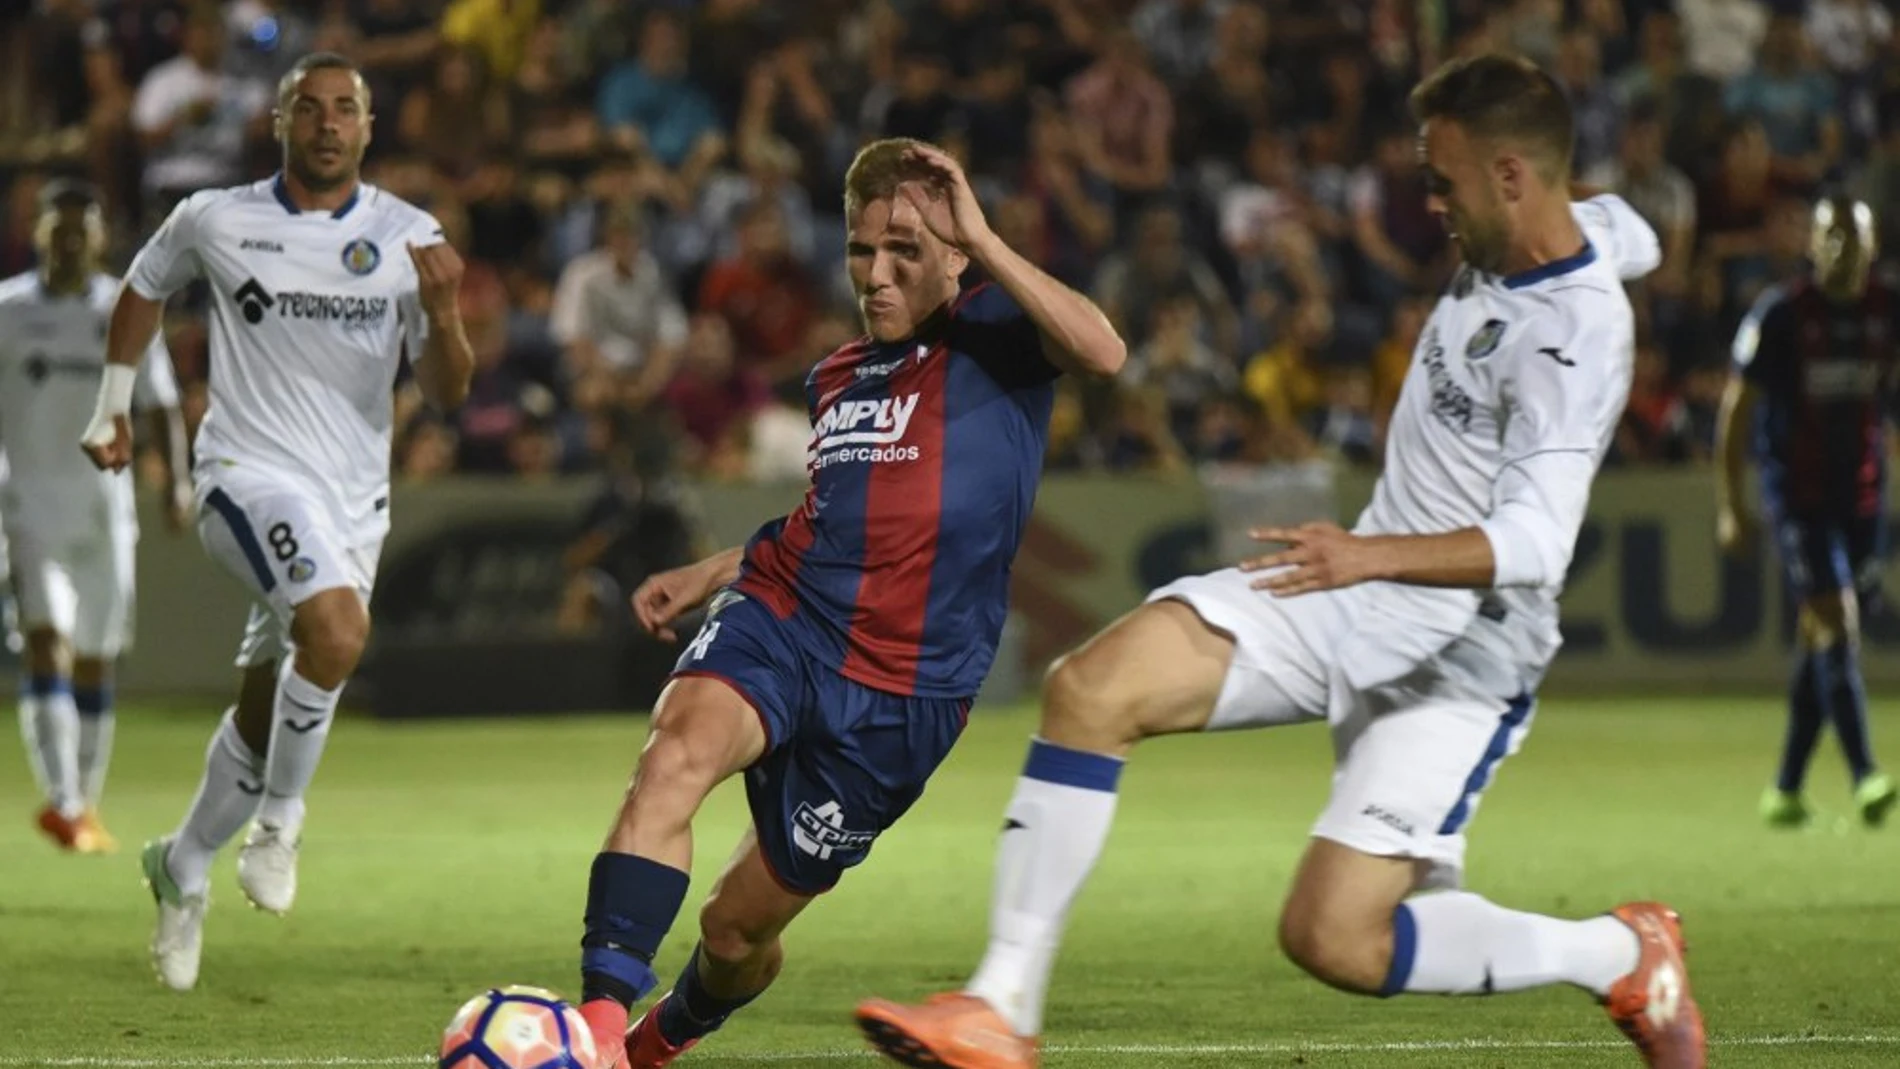 El centrocampista del Huesca, Samuel Sáiz, controla el balón junto un jugador del Getafe.